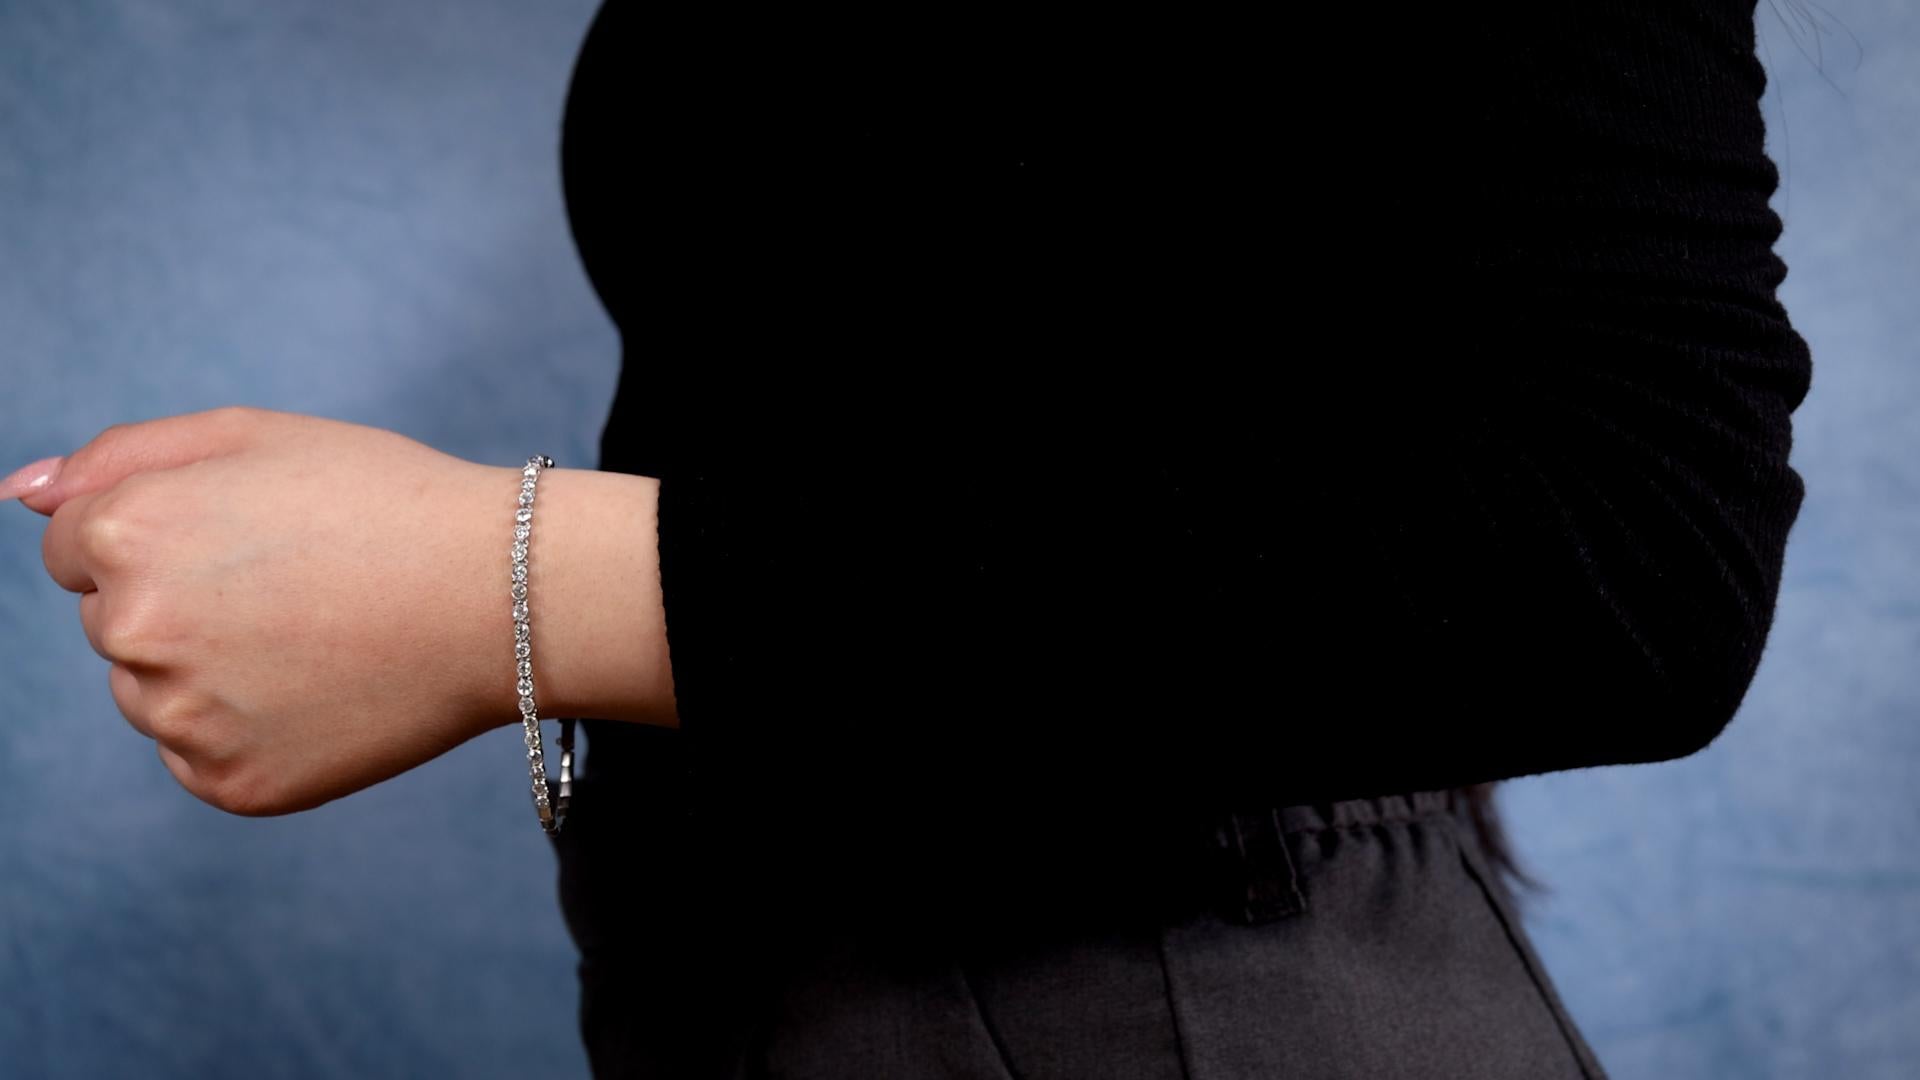 Ein Art Deco Französisch Diamant Platin-Armband. Mit 25 Diamanten im alten europäischen Schliff mit einem Gesamtgewicht von ca. 2,00 Karat, eingestuft als nahezu farblos, Reinheit SI. Gefertigt aus Platin mit französischen Punzen. Ca. 1920. Das